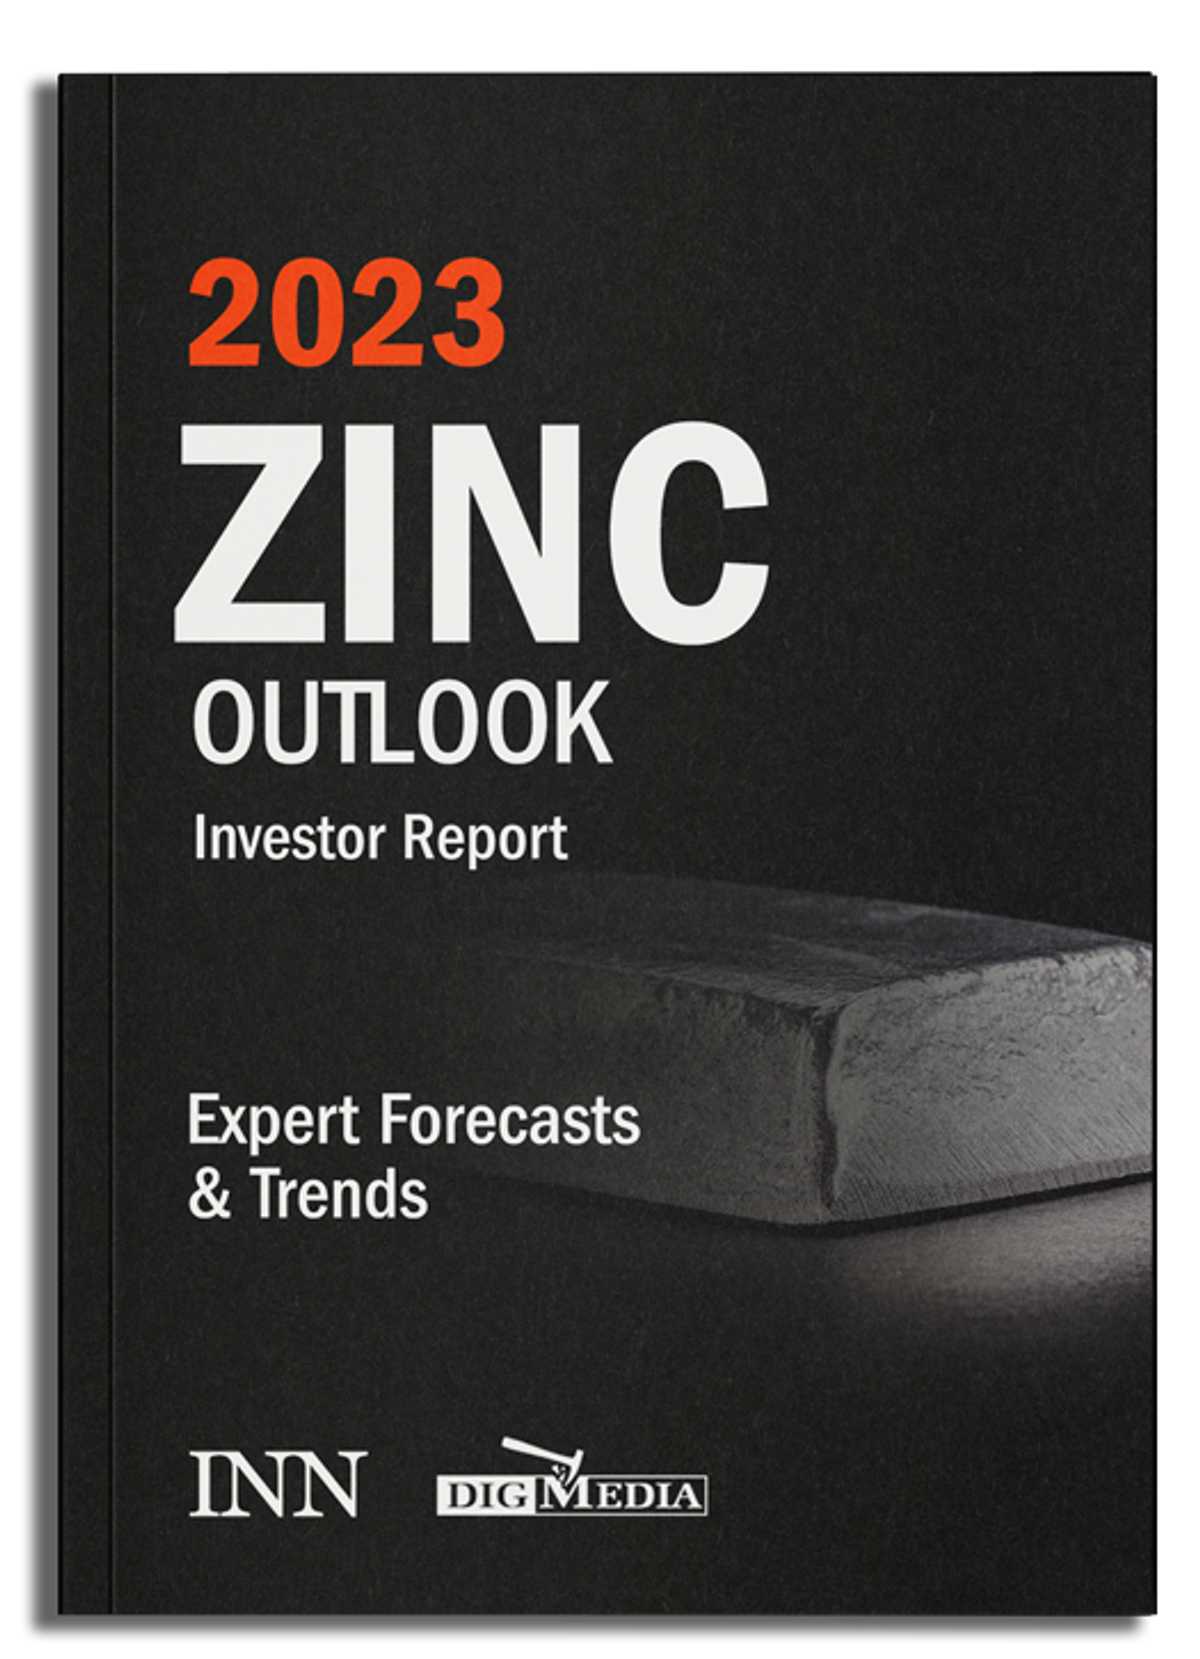 2023 Zinc Outlook Report